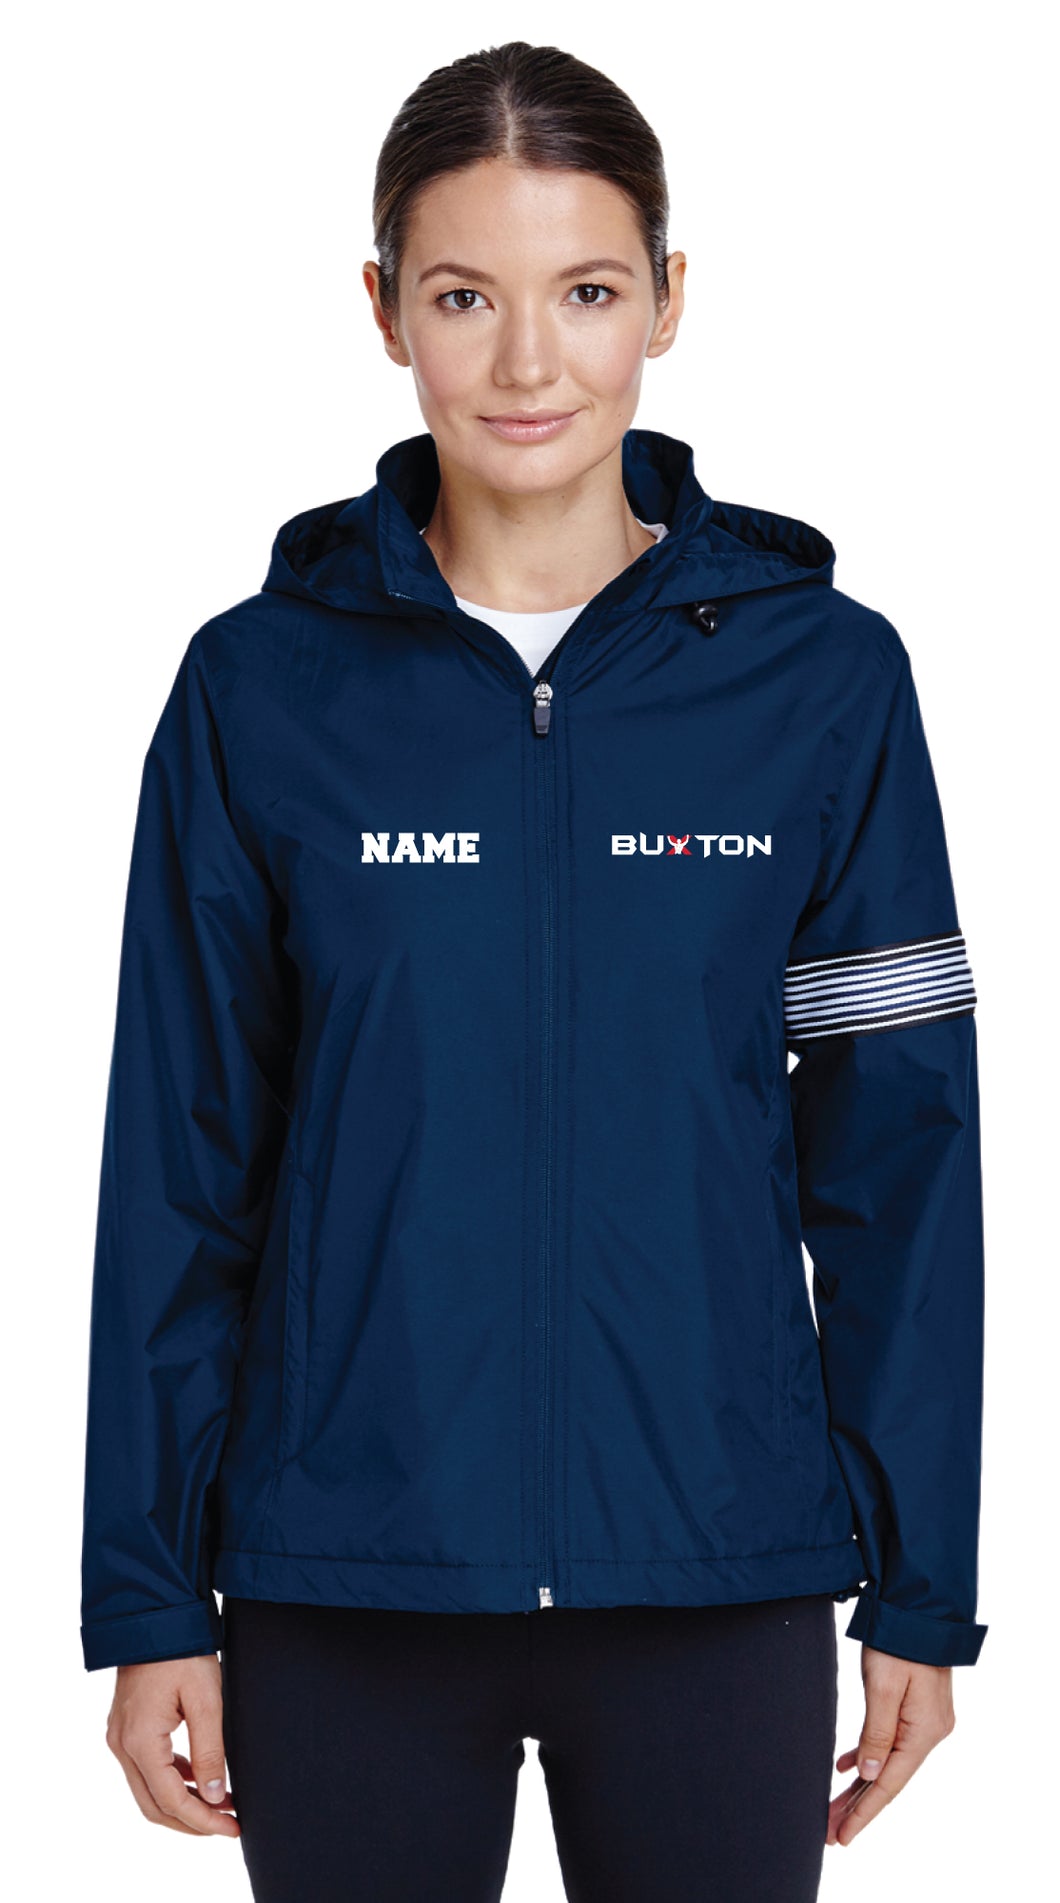 Buxton All Season Hooded Women's Jacket - Navy - 5KounT2018